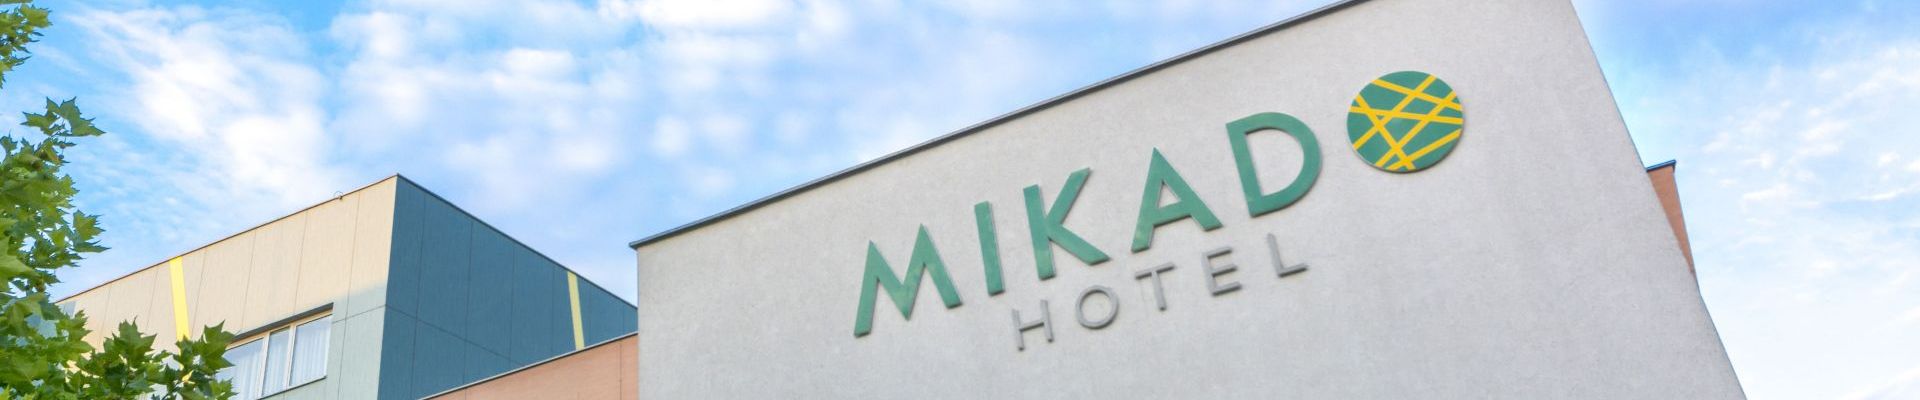 Hotel MIKADO kongresy